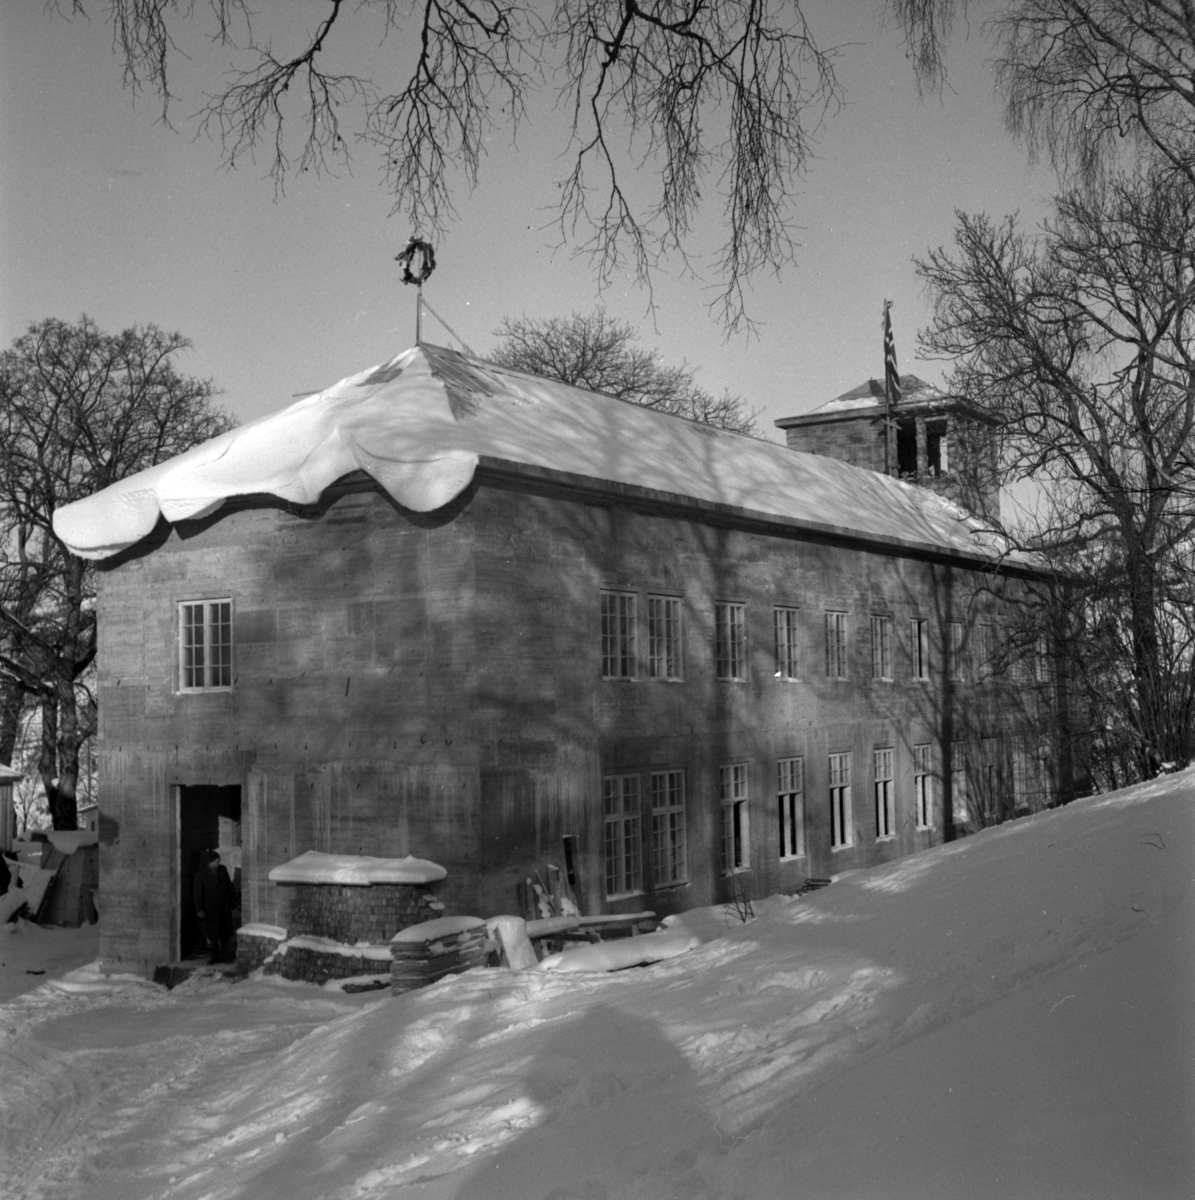 Aust-Agder-Museets første byggetrinn  - senere arkivfløy -  på Langsæ.  Kranselag. Vinter med snøl. Mennesker i døråpningen.